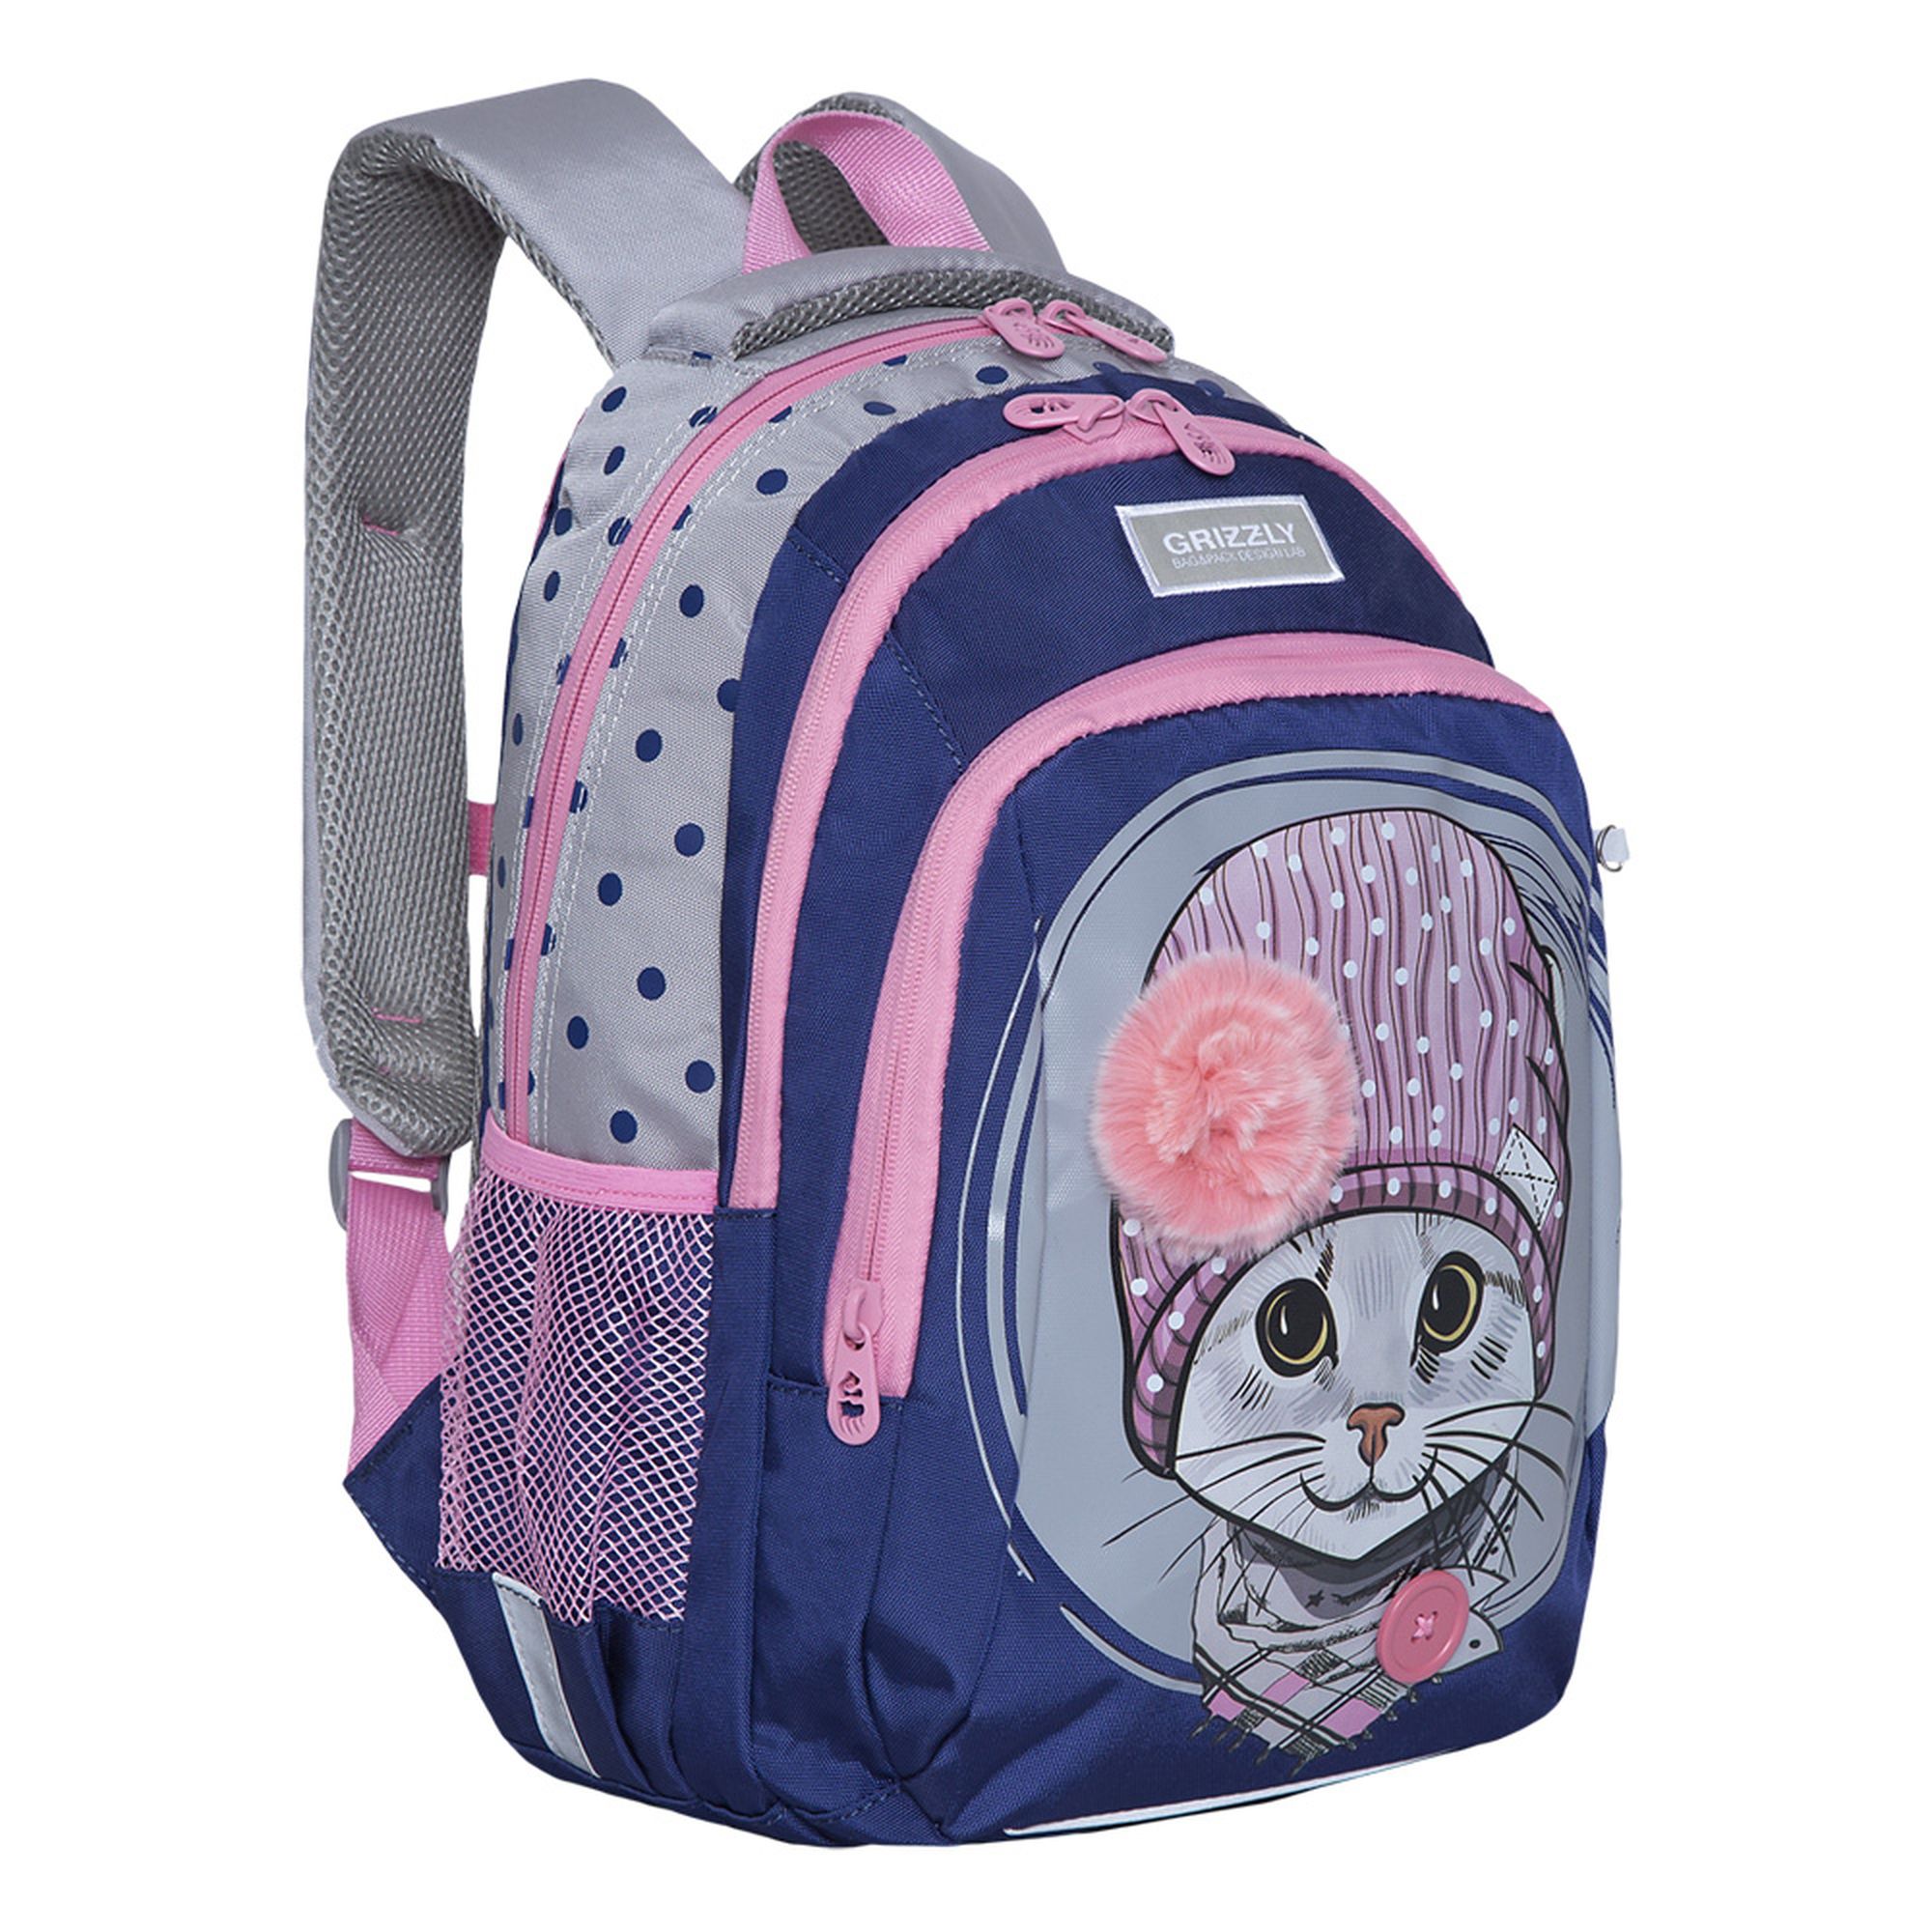 Рюкзак школьный Grizzly Темно-синий-Светло-серый RG-162-1/2 - фото 2